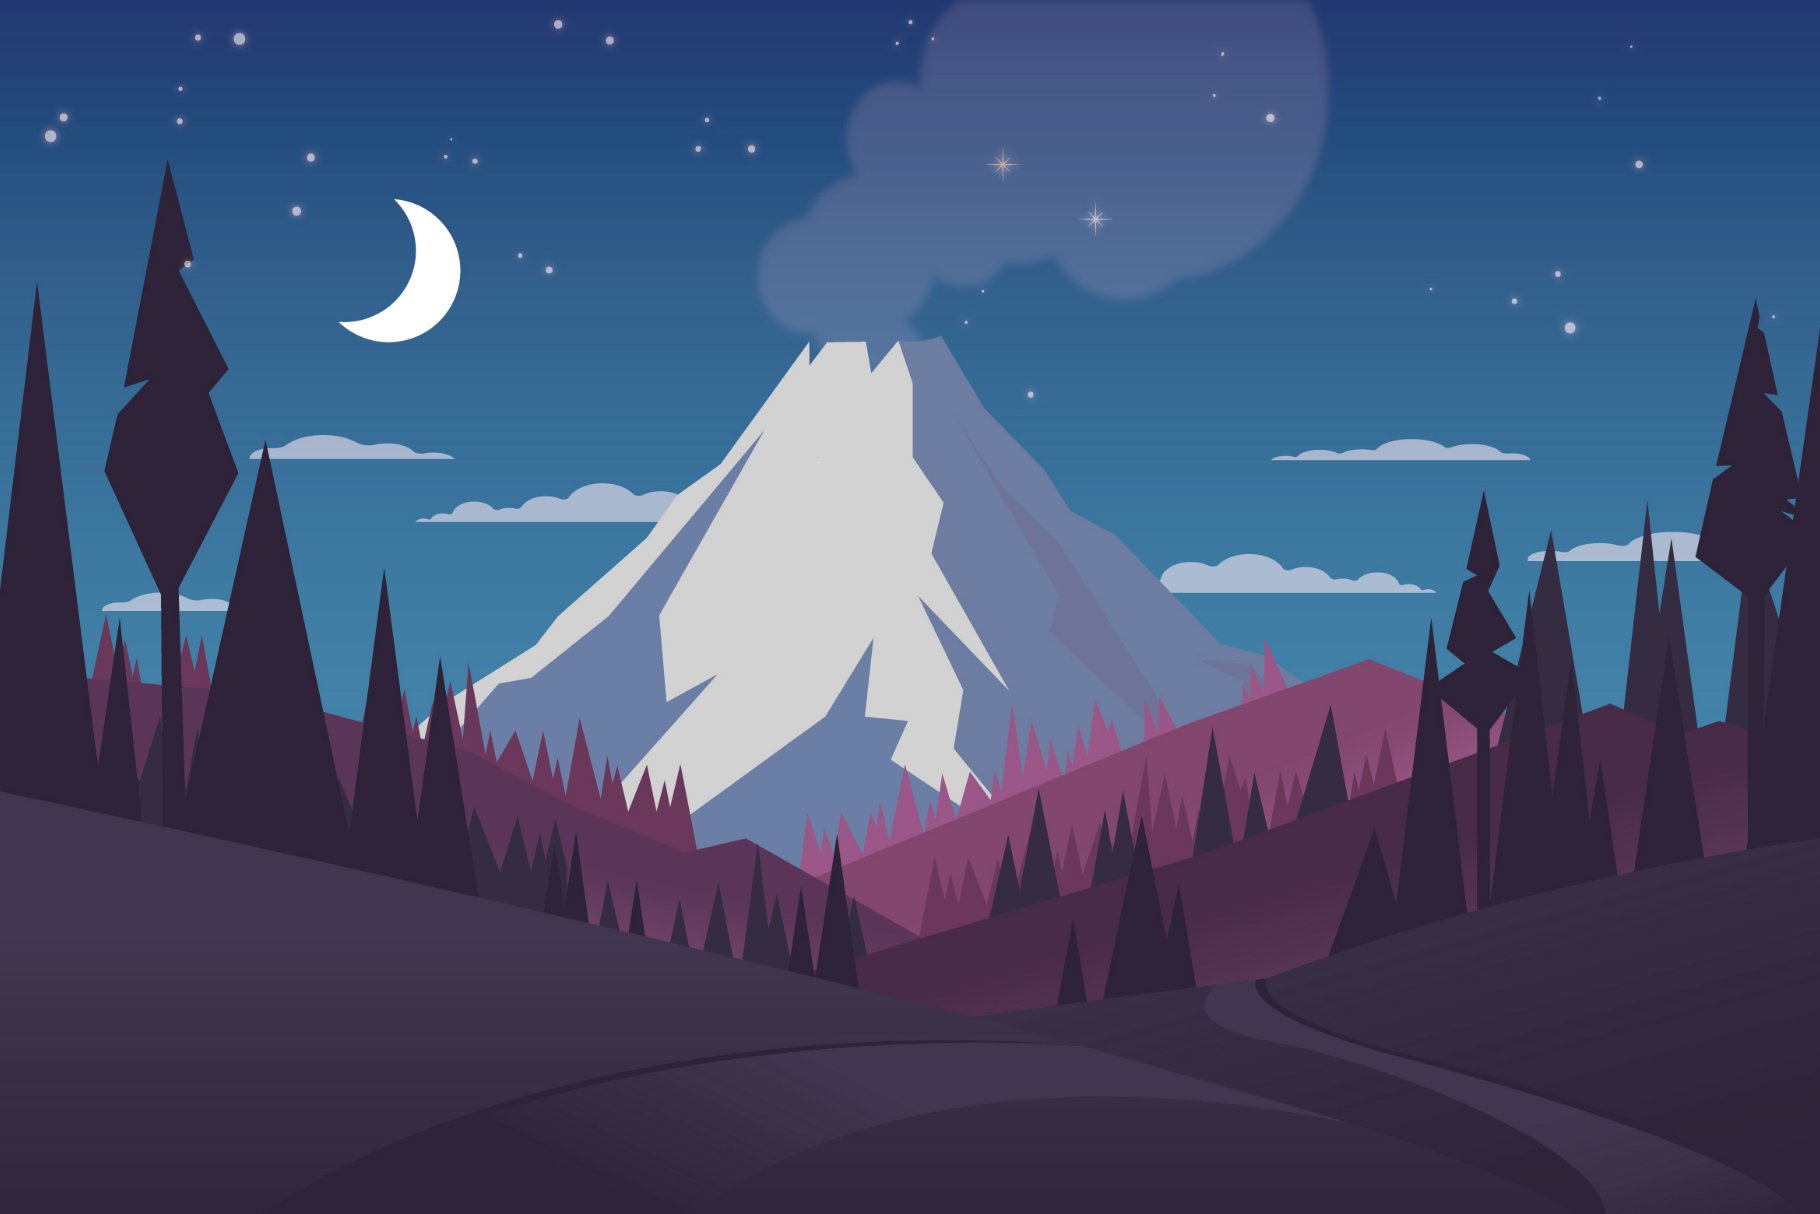 Volcano - Landscape Illustration cover image.